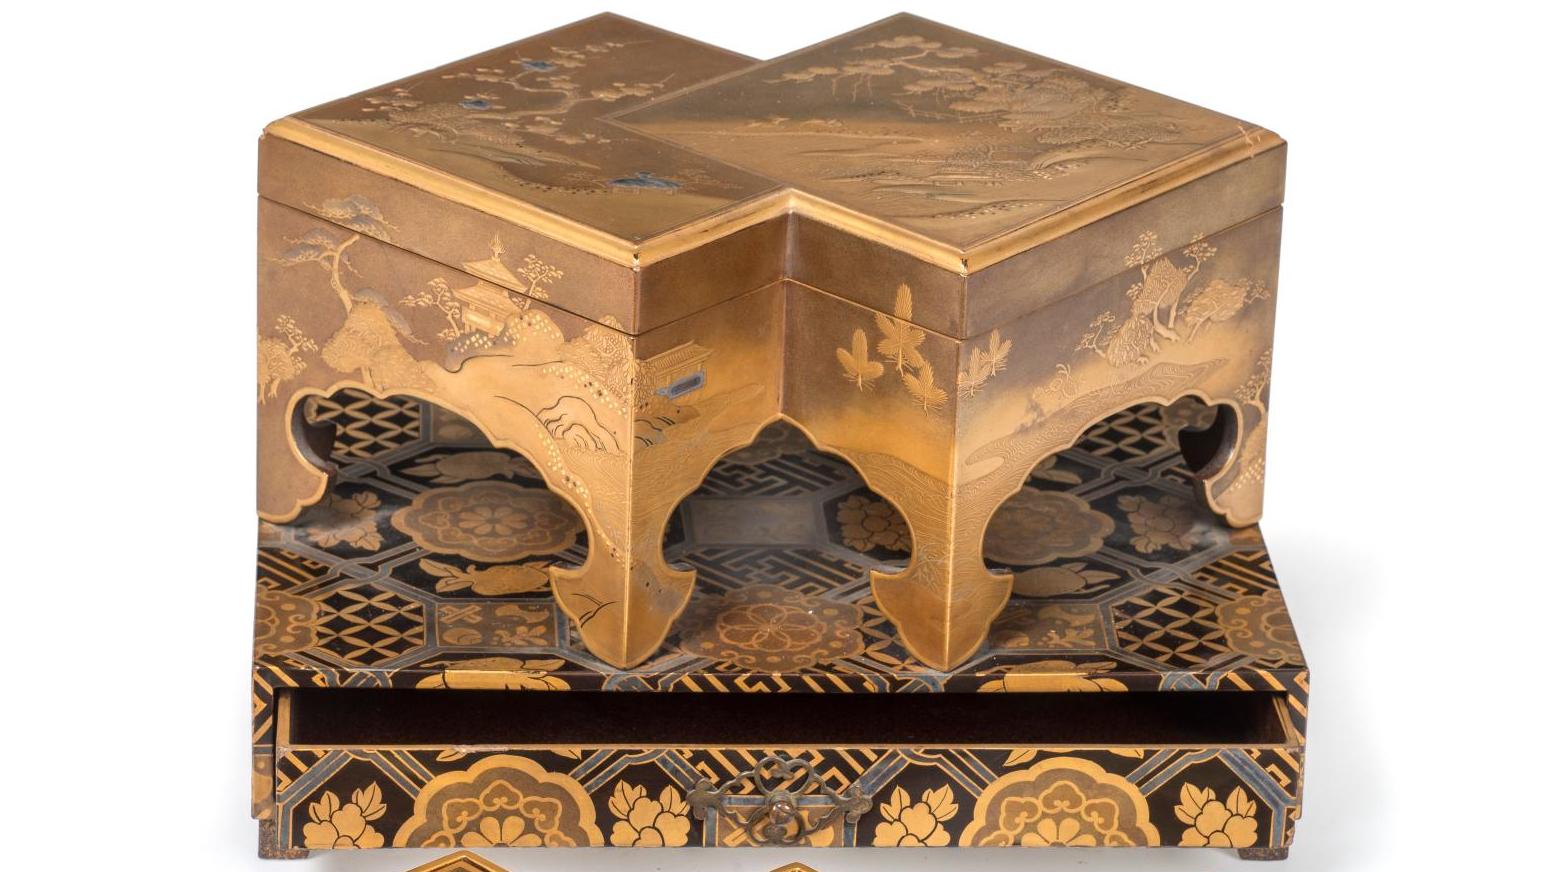 Époque d’Edo, XVIIIe siècle. Nécessaire pour le jeu de l’encens, bois laqué, décor... L’esthétique kazari, l’ornement japonais